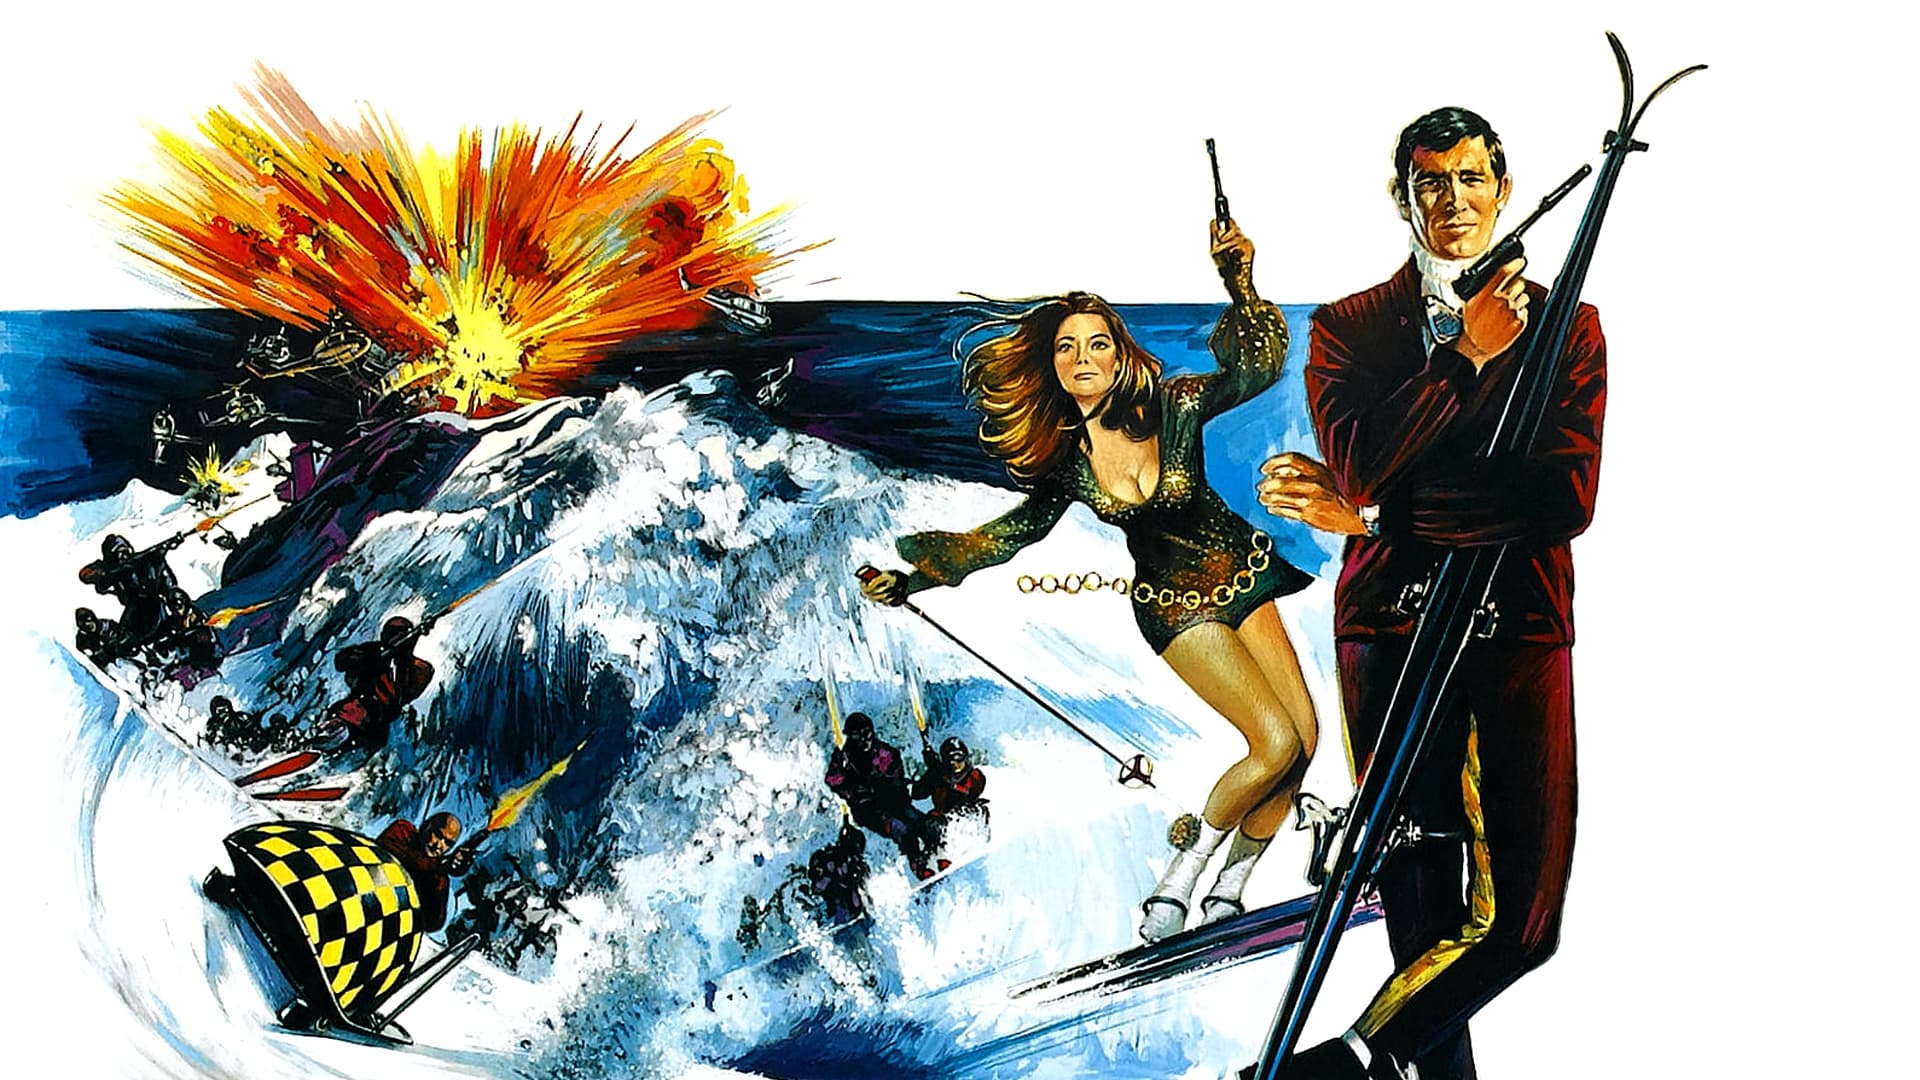 James Bond: Agent 007 i Hendes Majestæts hemmelige tjeneste